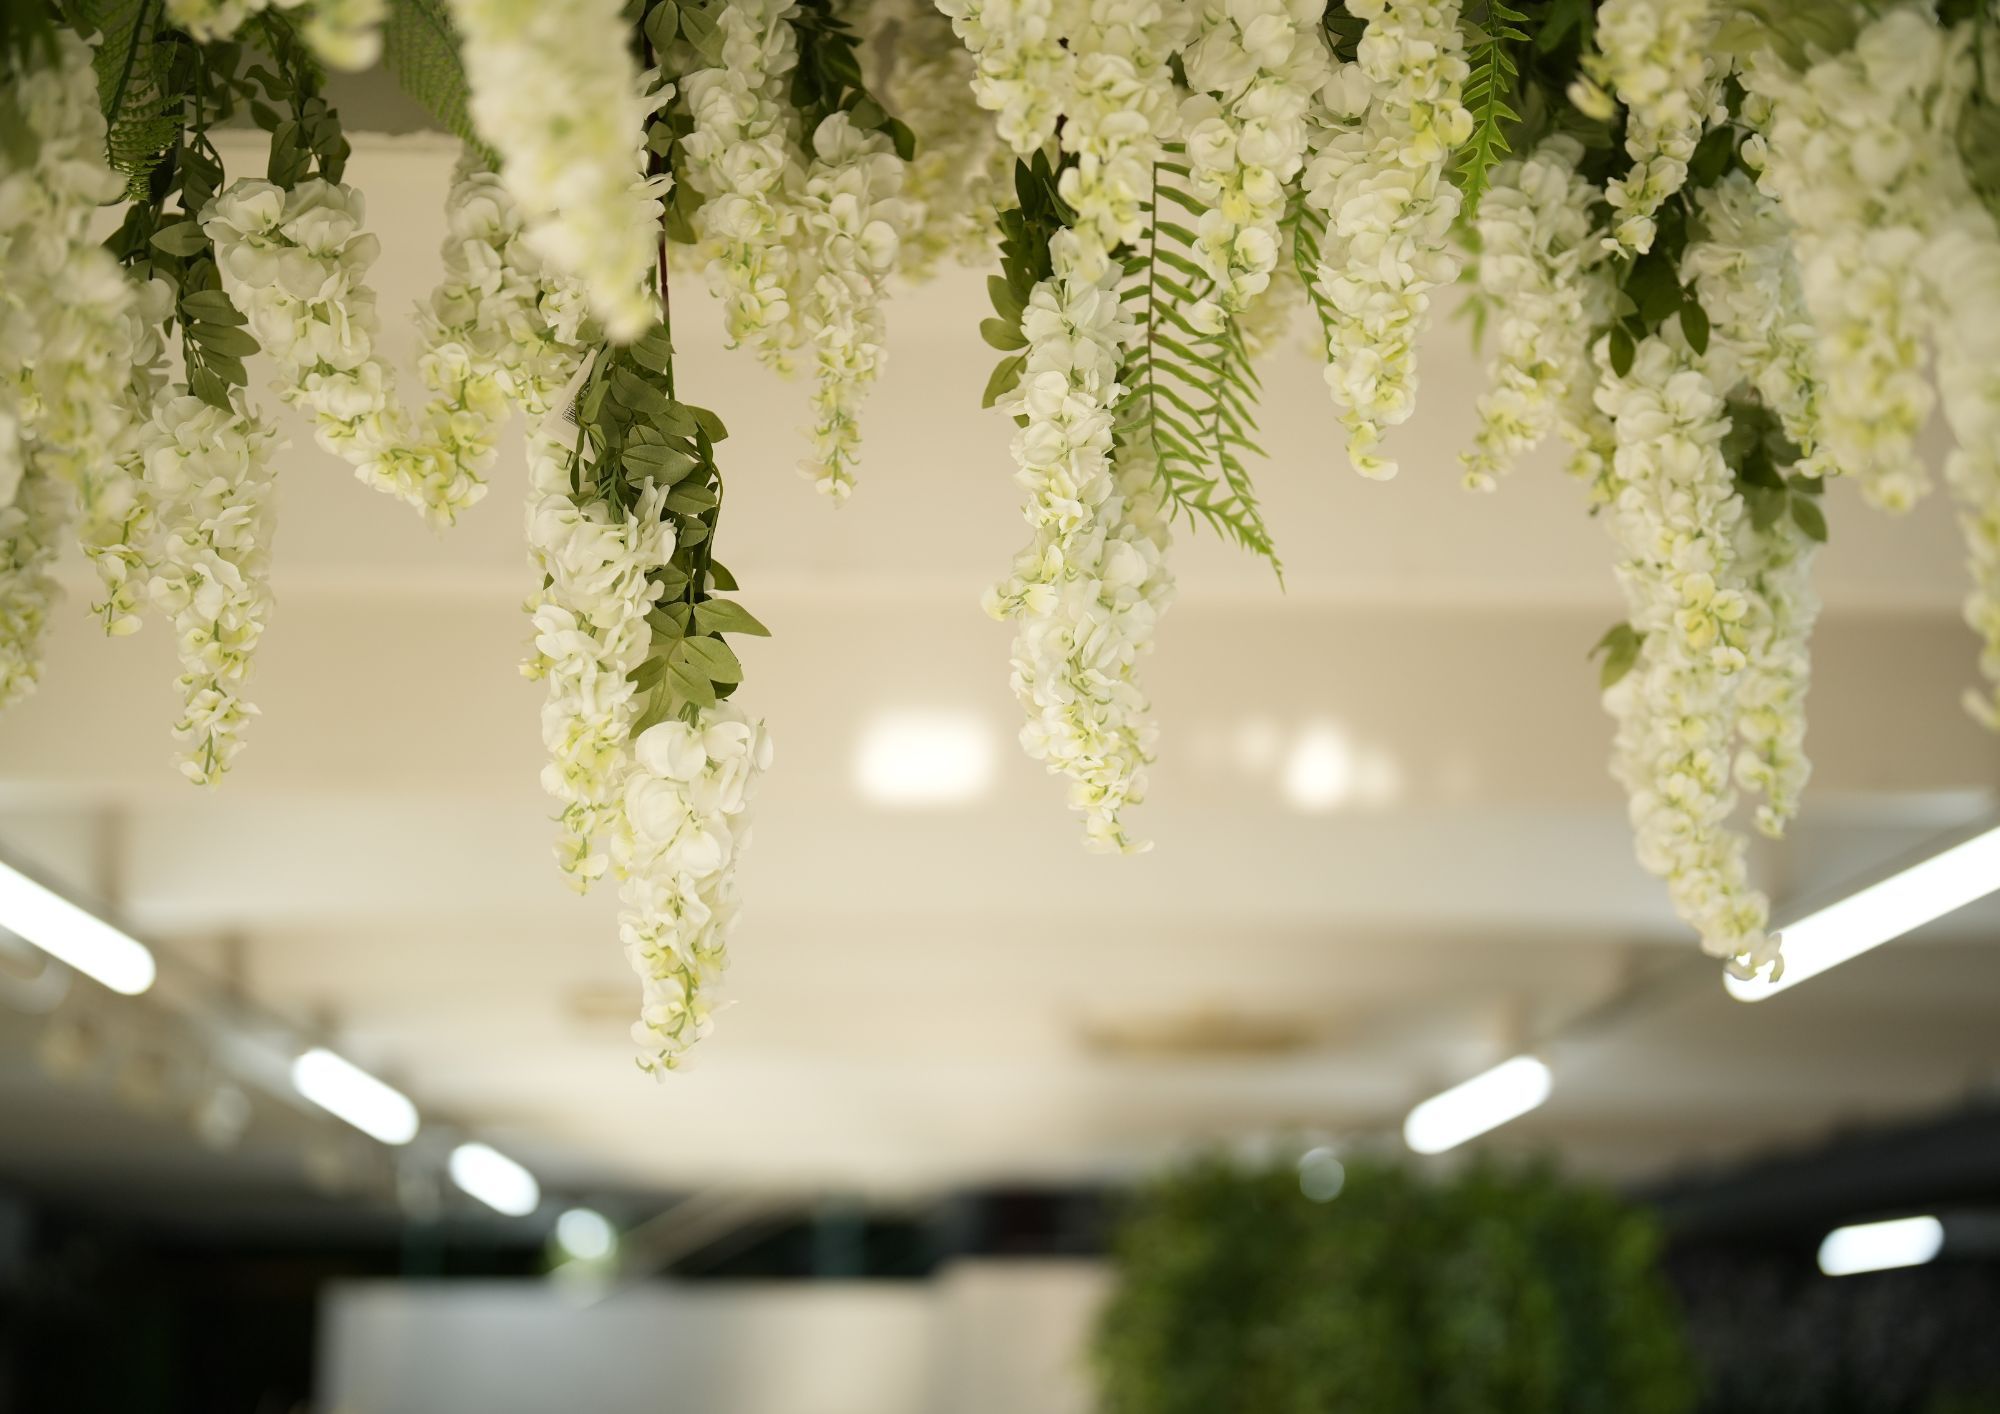 Bemaco cuenta con un nuevo showroom para ofrecer ideas decorativas con flores y plantas artificiales